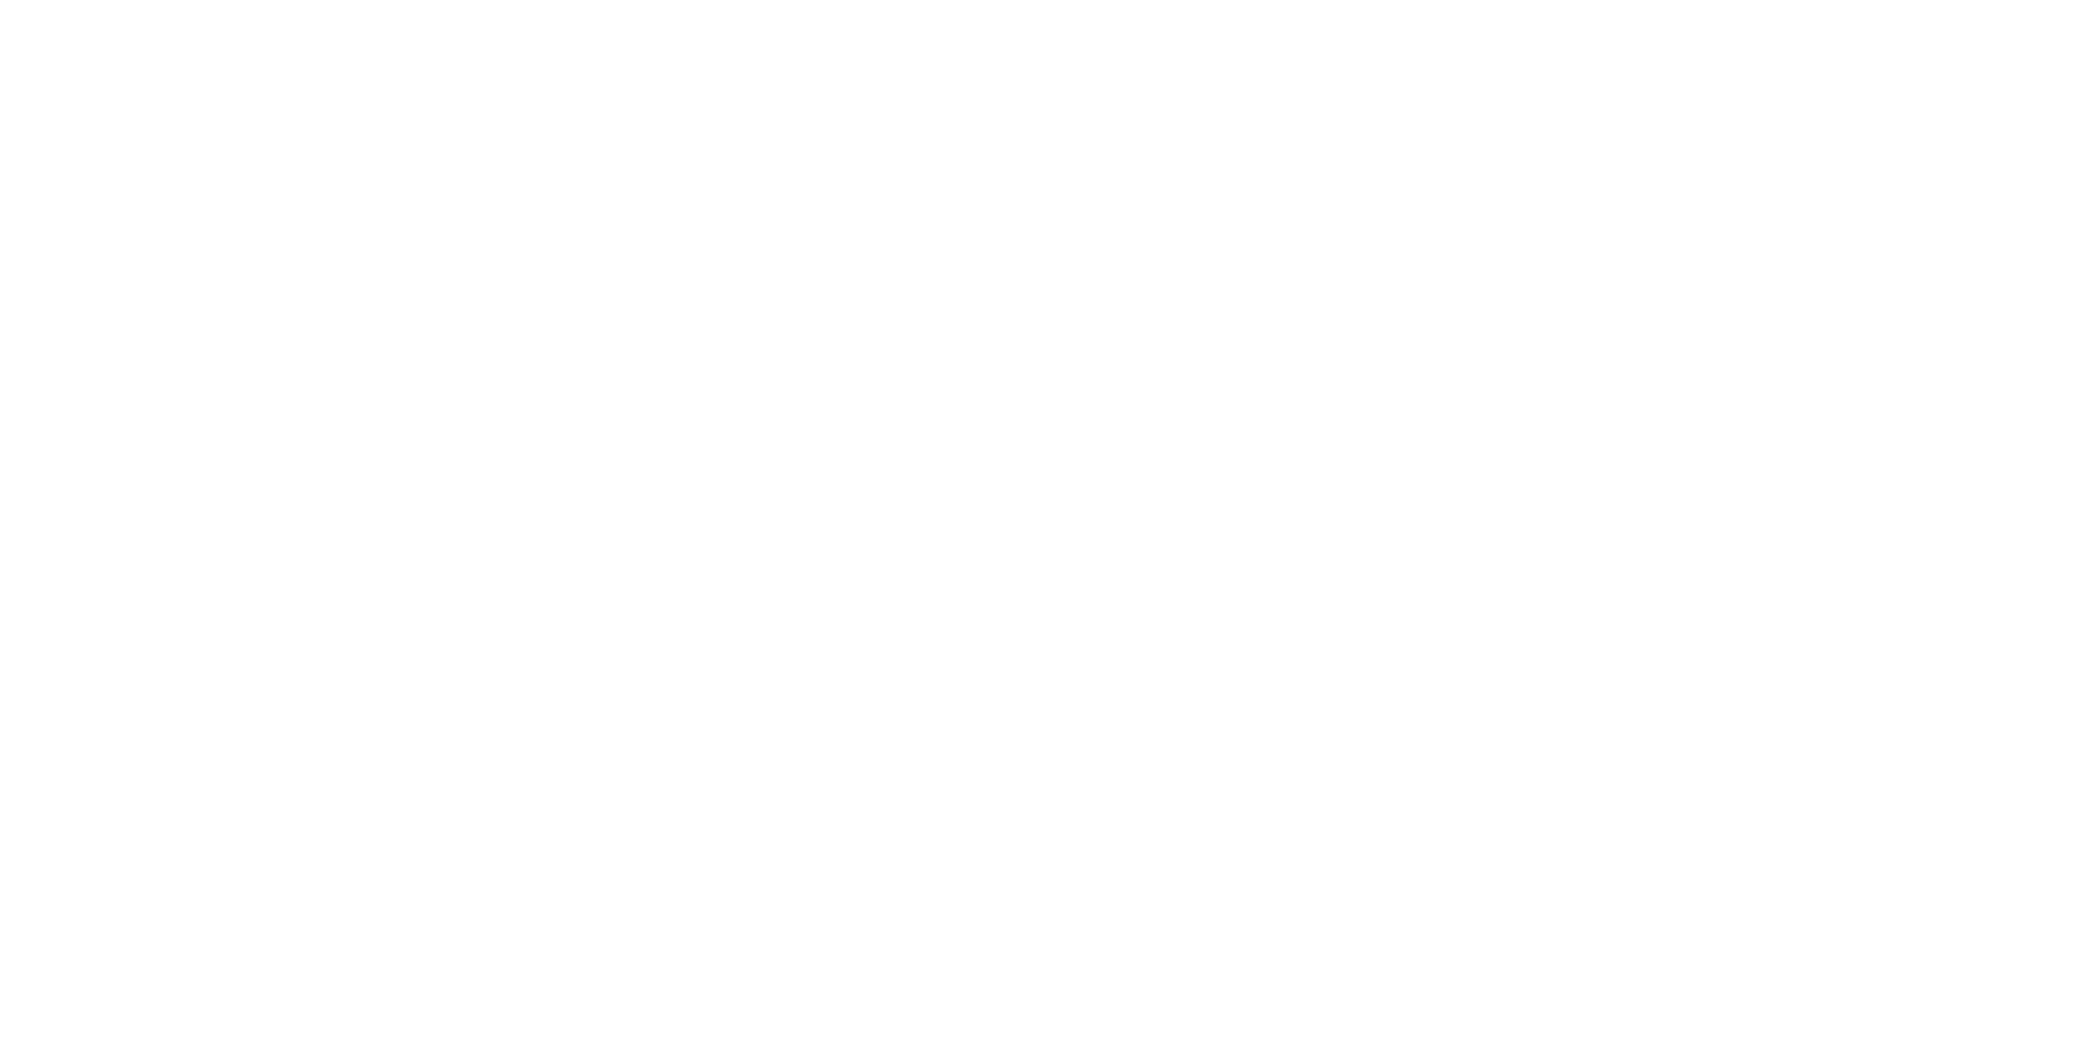 Finnish Conducting School